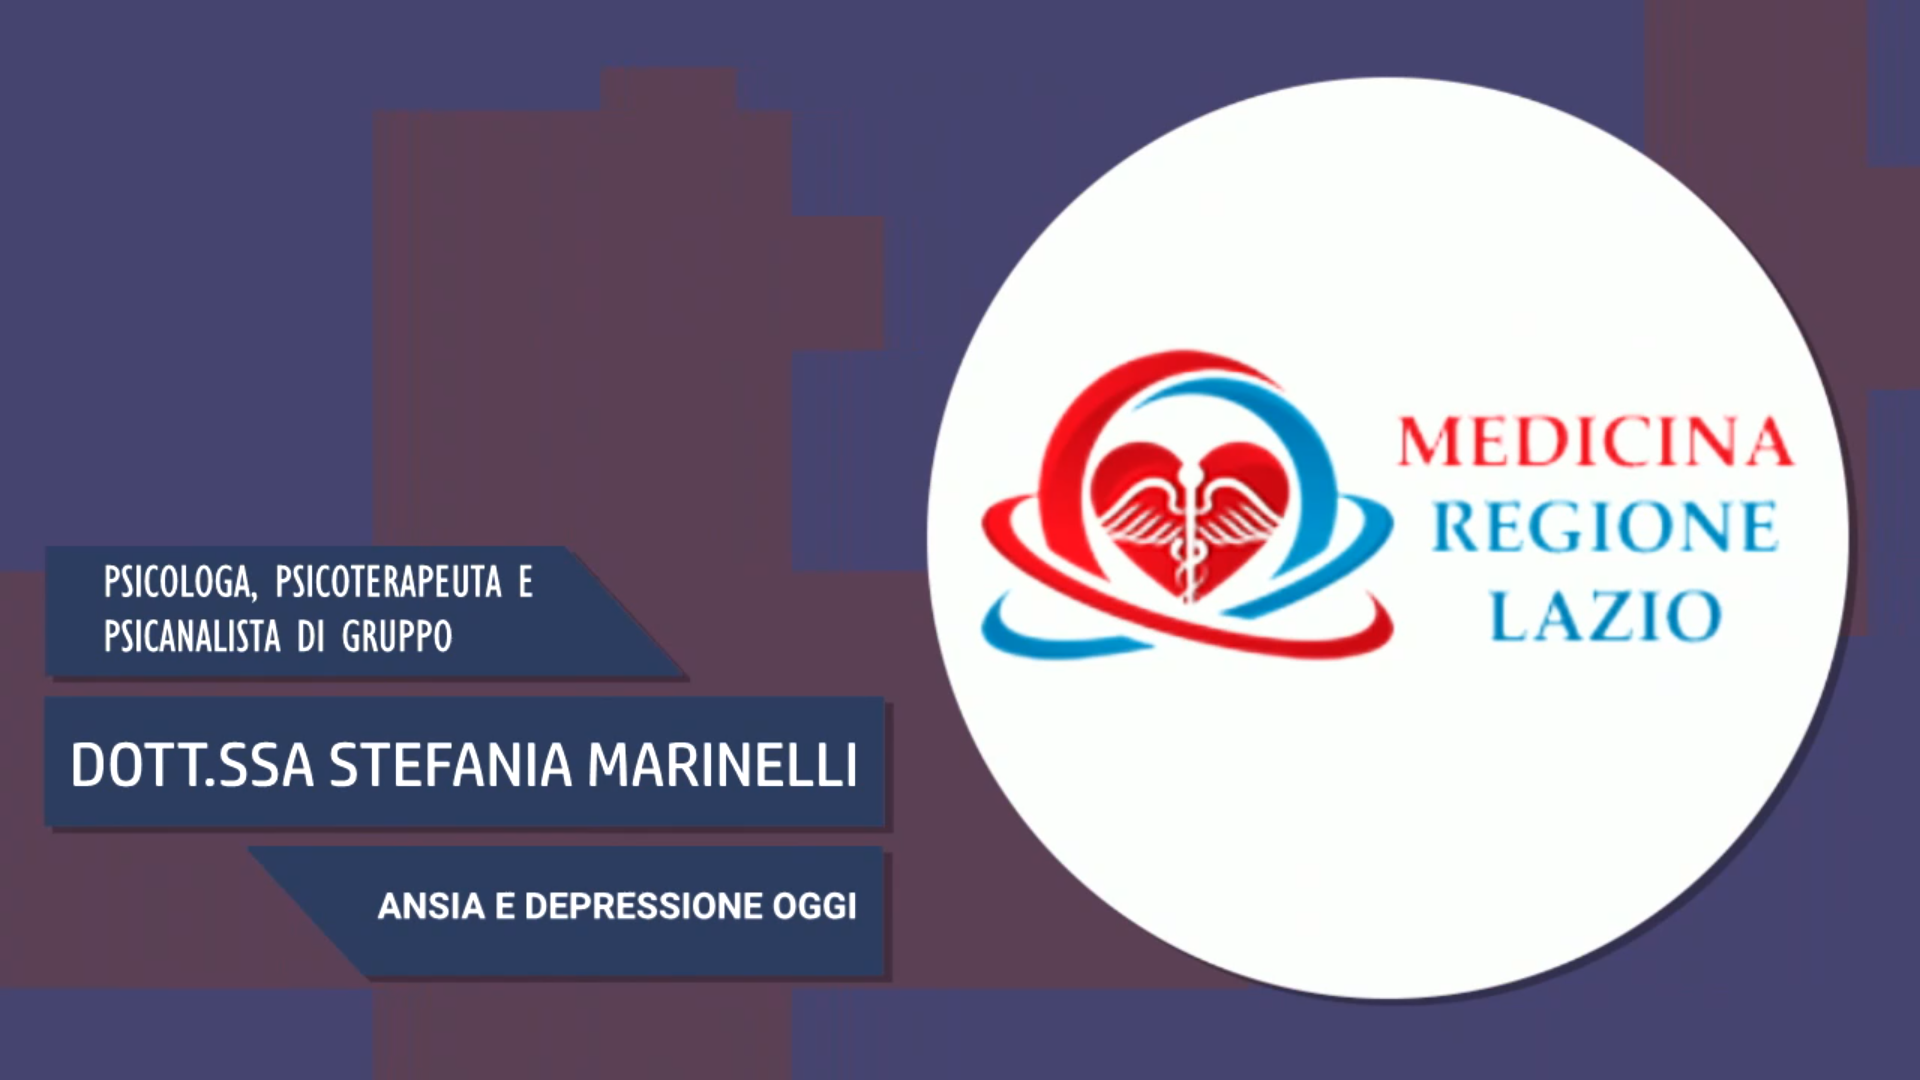 Intervista alla Dott.ssa Stefania Marinelli – Ansia e depressione oggi